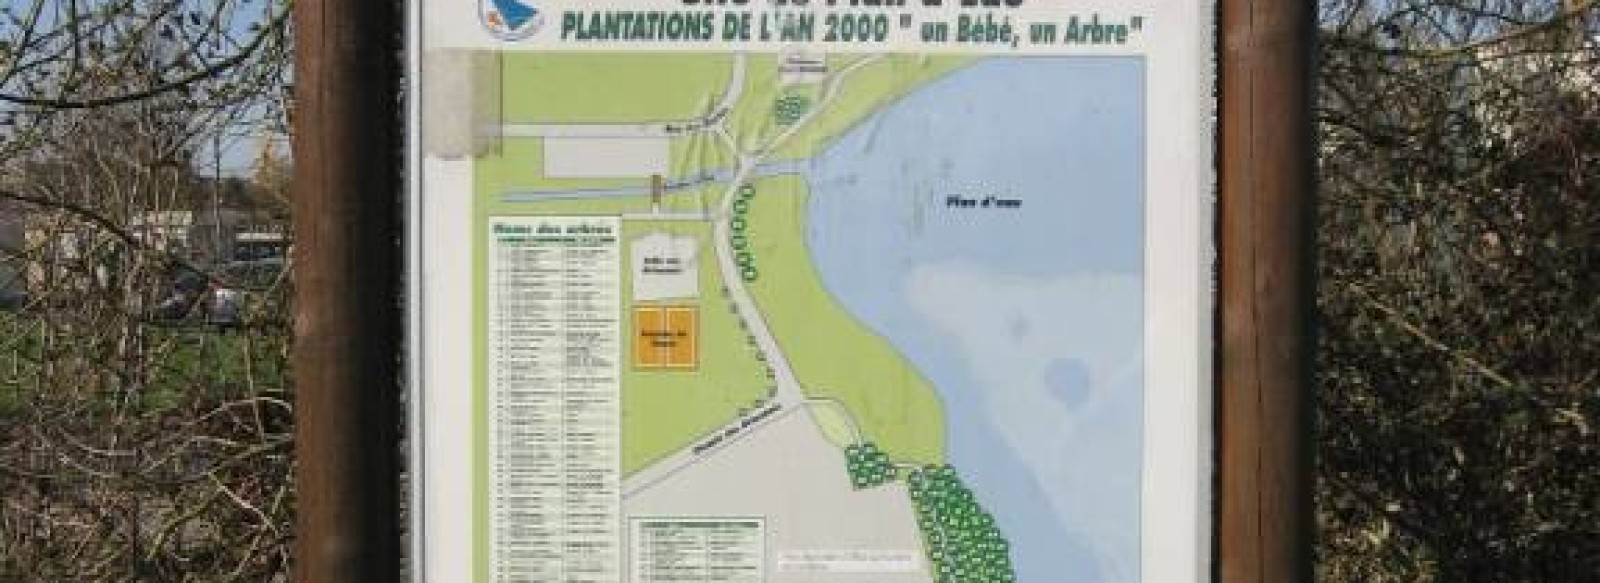 PLANTATIONS LES BEBES DE L'AN 2000